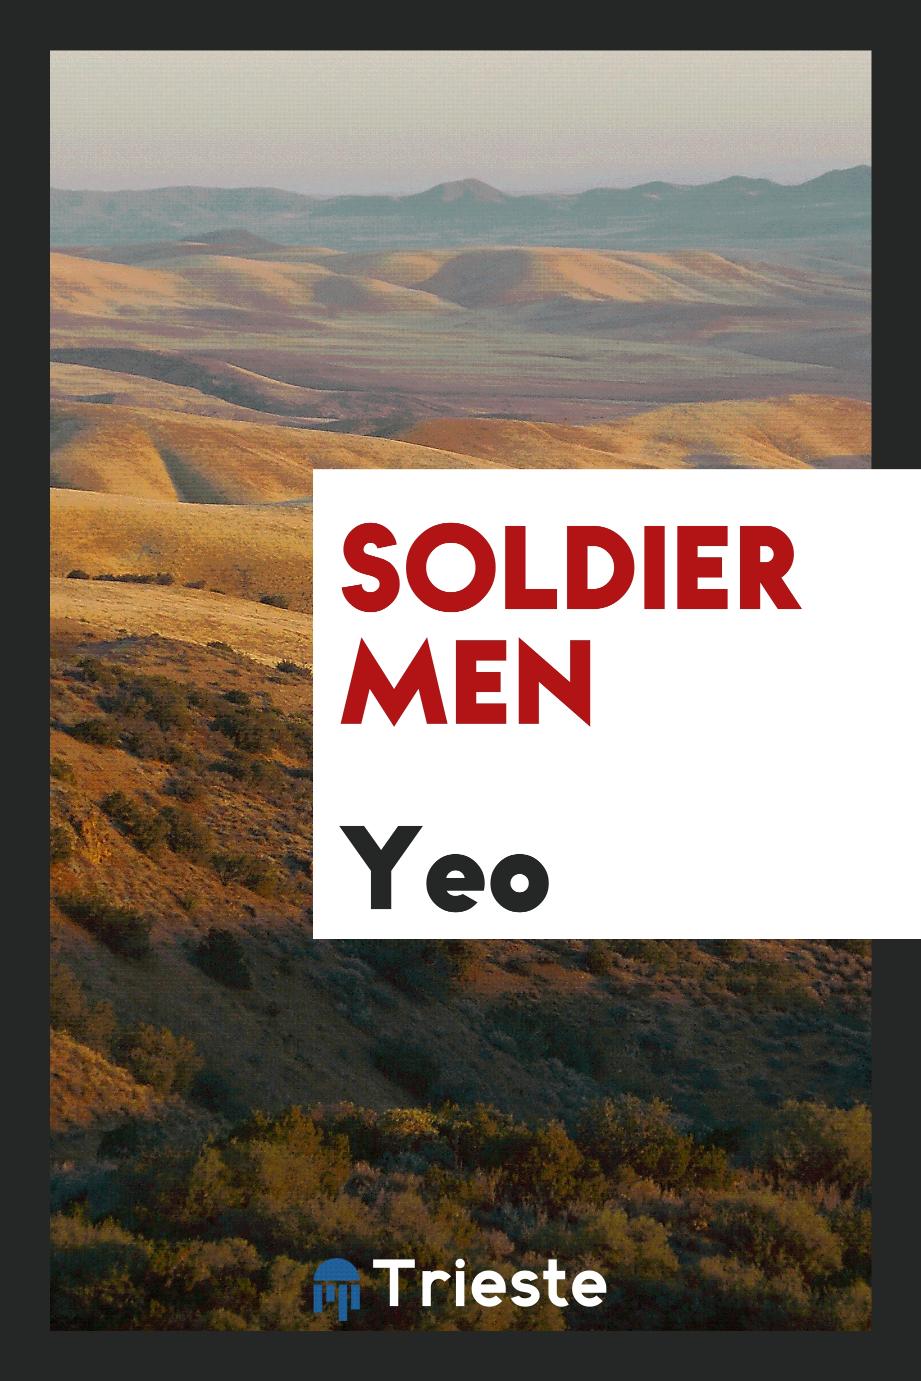 Soldier men